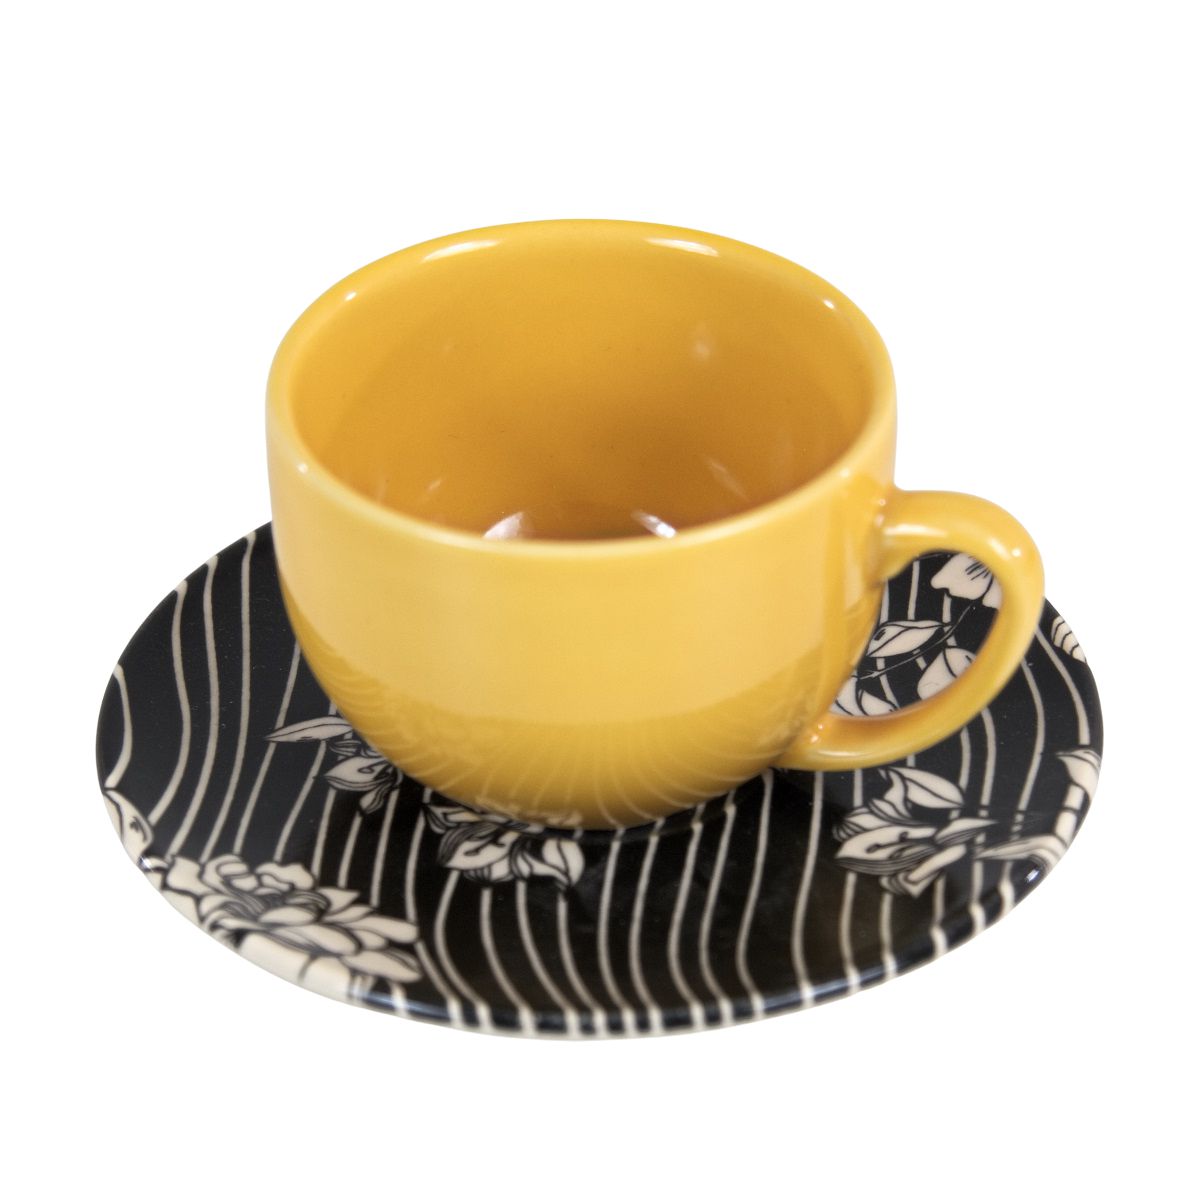 Jogo de chá com padrão floral e chávena com pires.